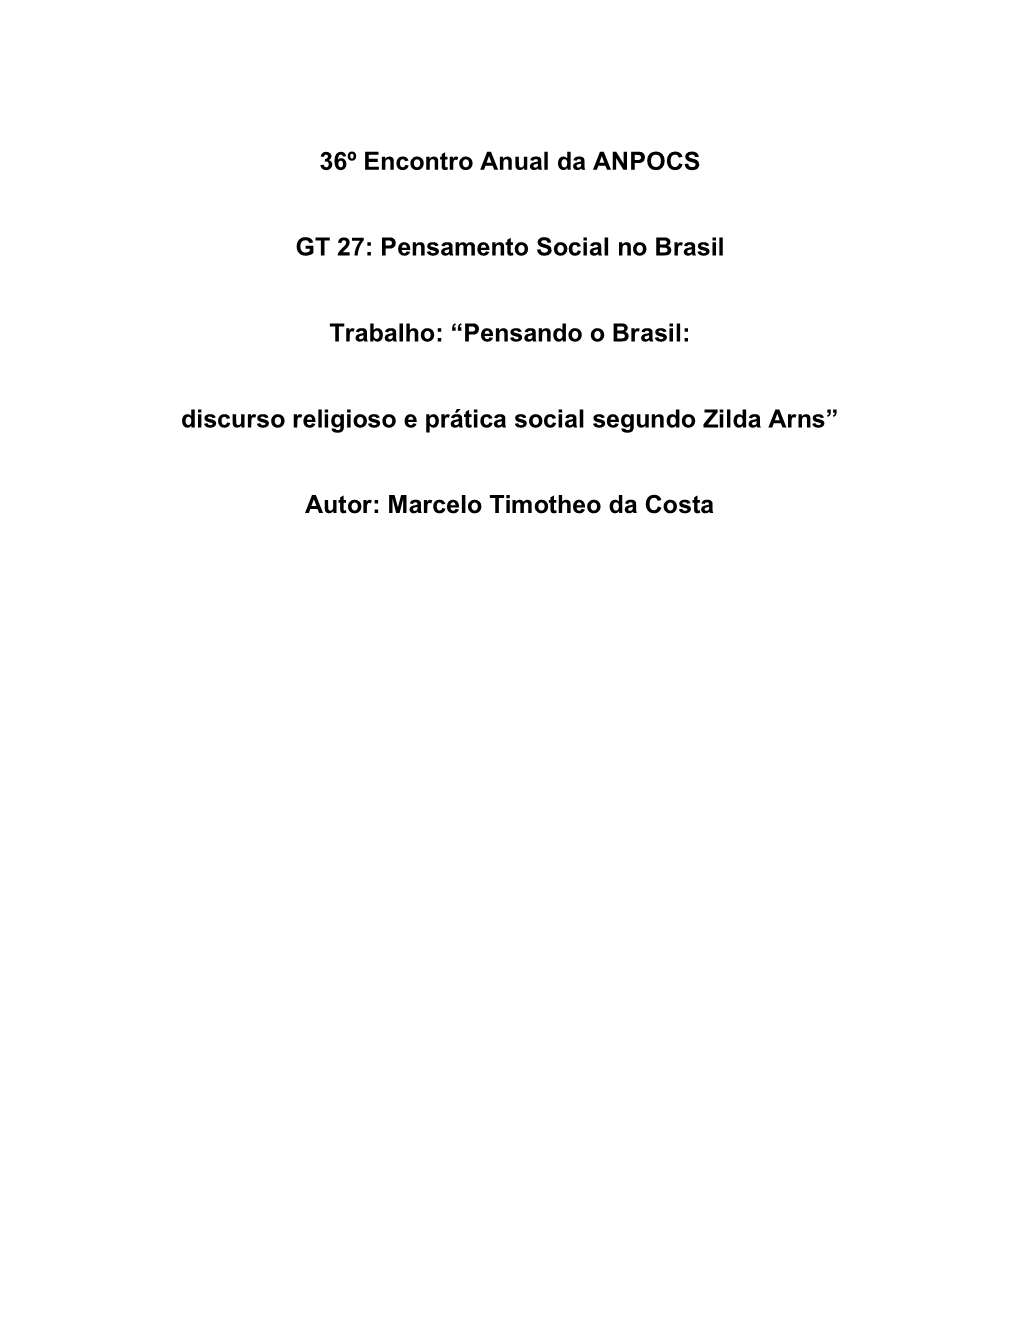 Pensando O Brasil: Discurso Religioso E Prática Social Segundo Zilda Arns”